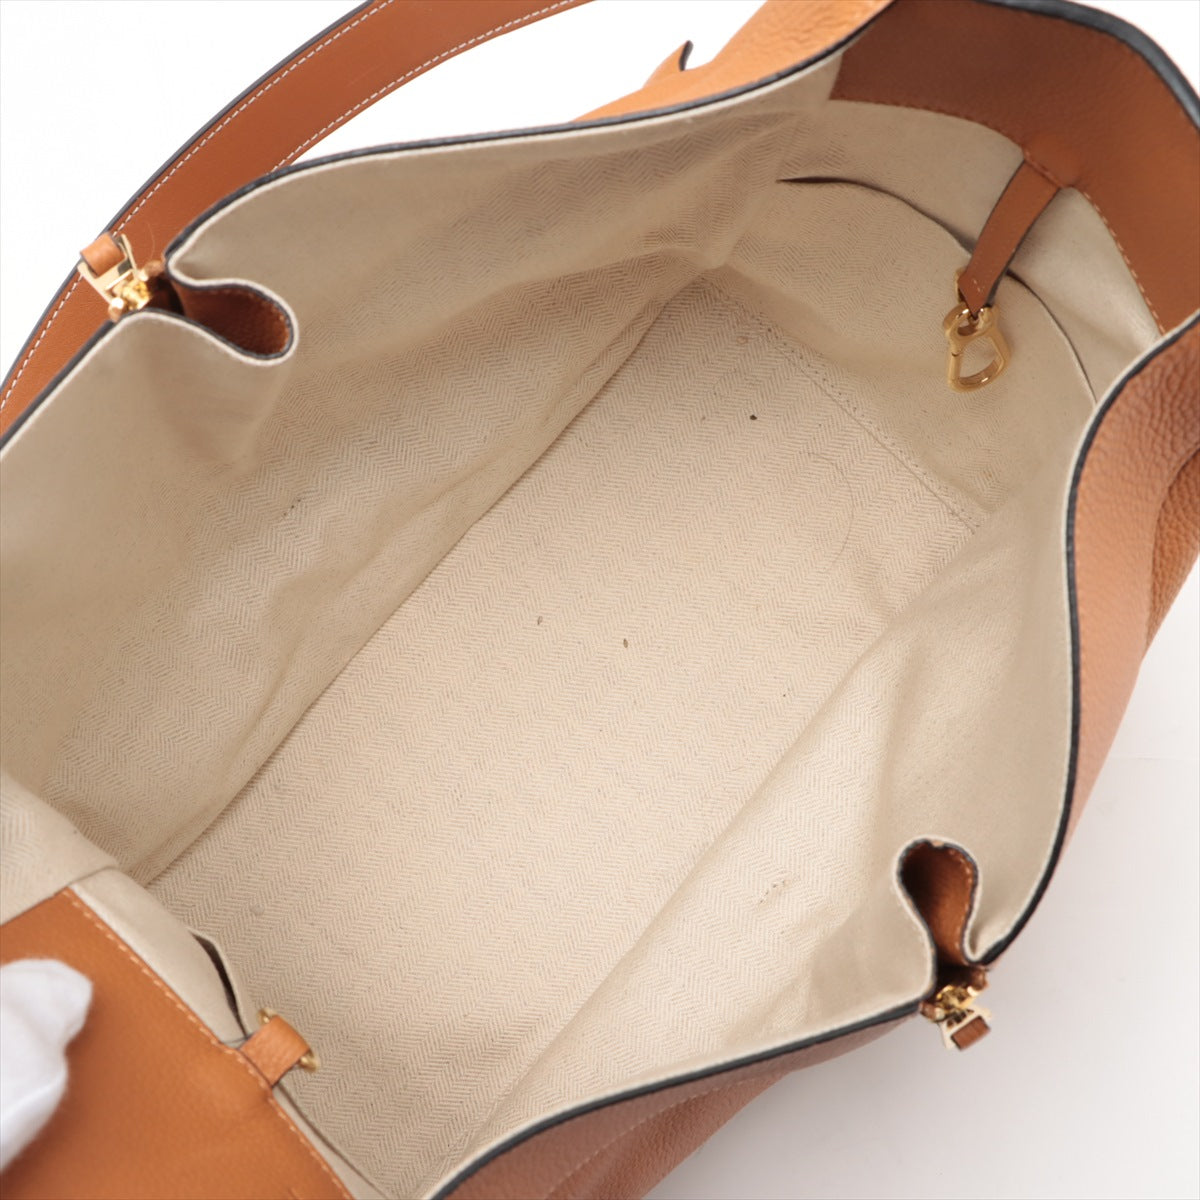 Loewe Hammock Small Leather 2WAY Shoulder Bag Brown